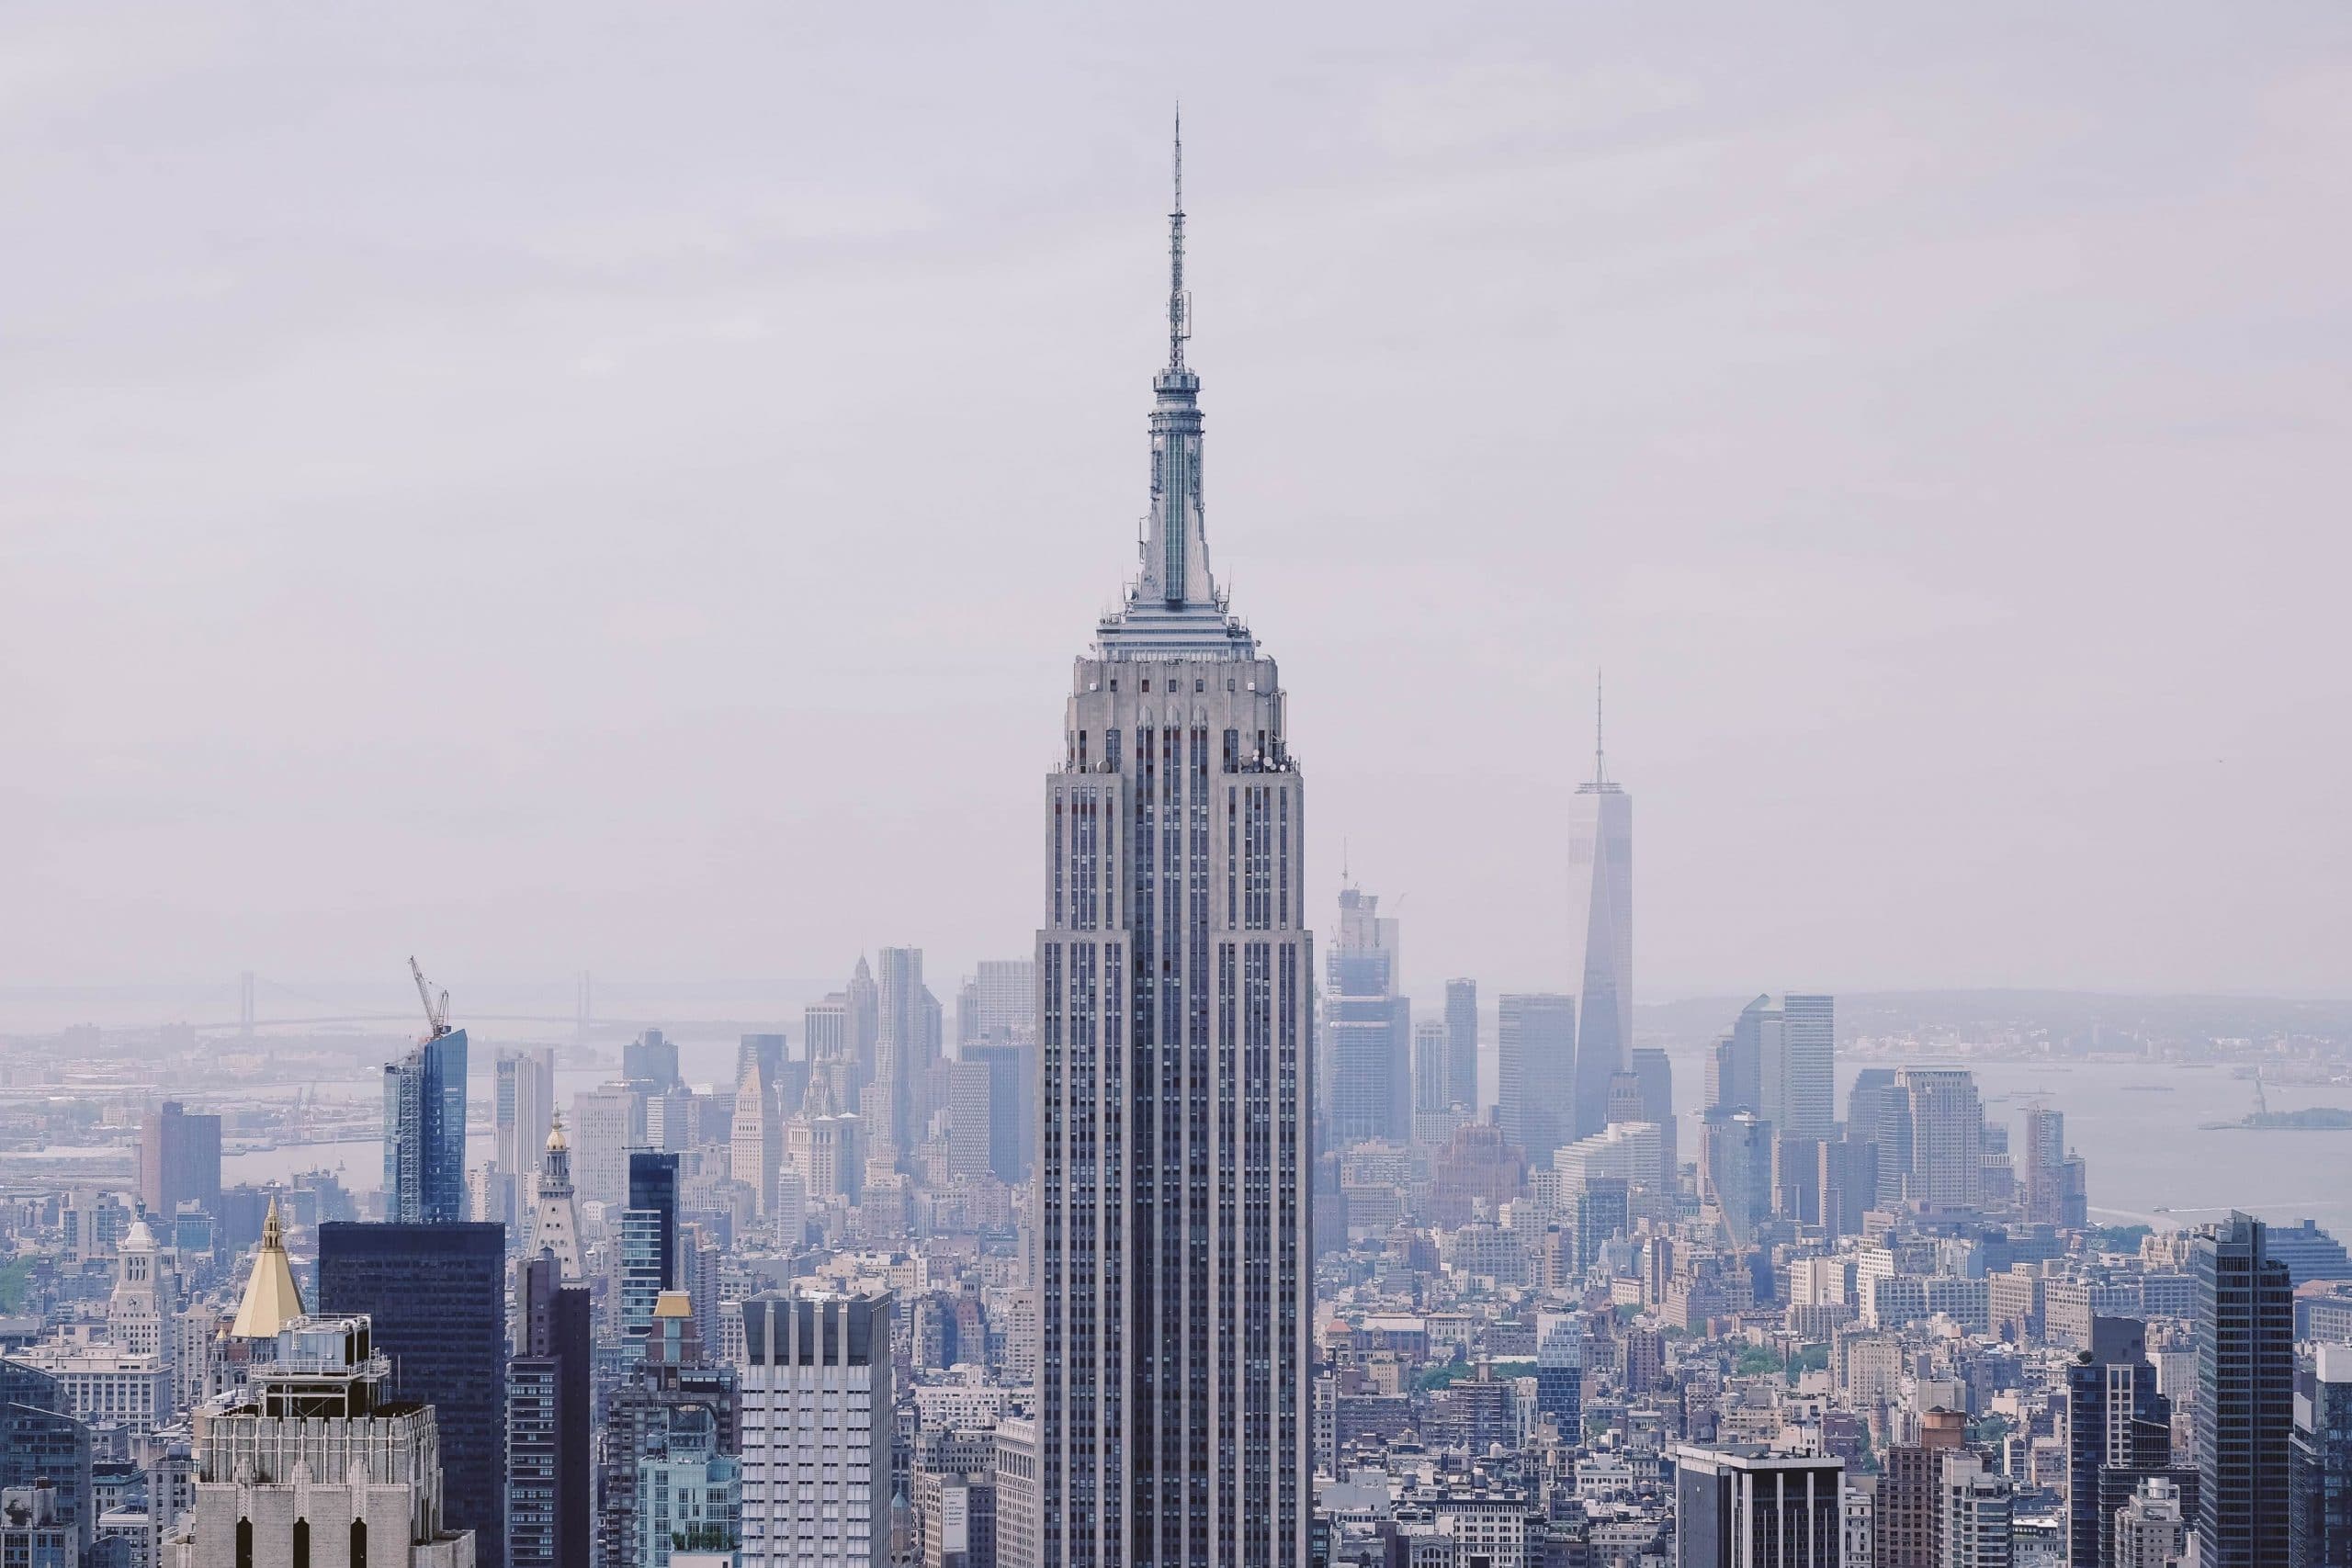 Das Empire State Building feiert seinen 90. Geburtstag. Fünf Fakten zum berühmtesten Wolkenkratzer der Welt.